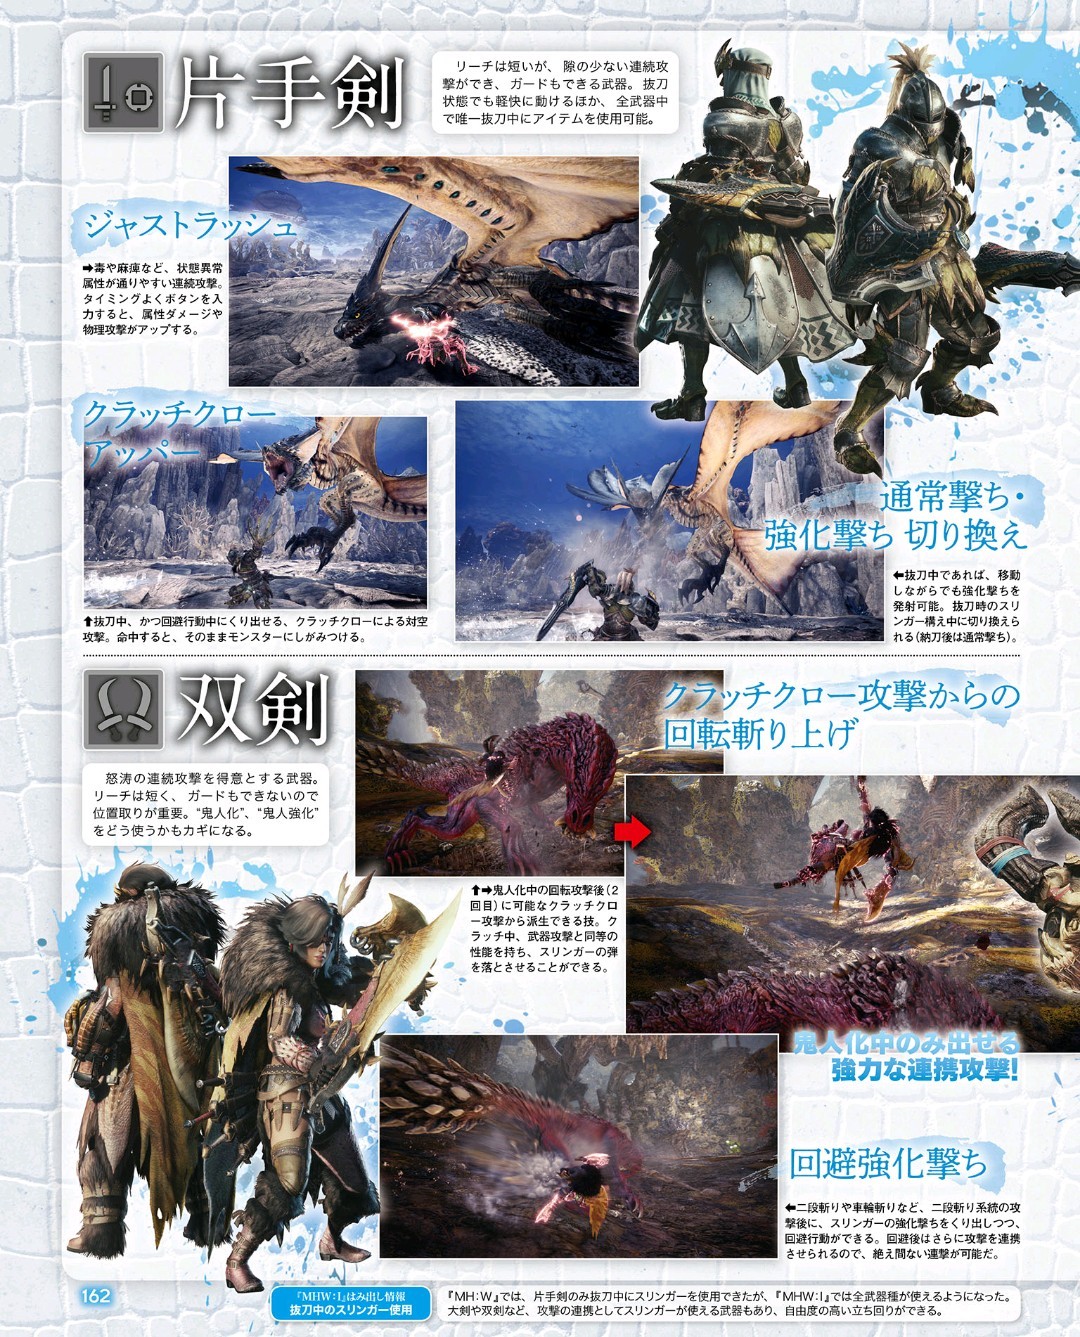 本周fami通新刊 怪物猎人世界冰原 清晰杂志截图 2 2